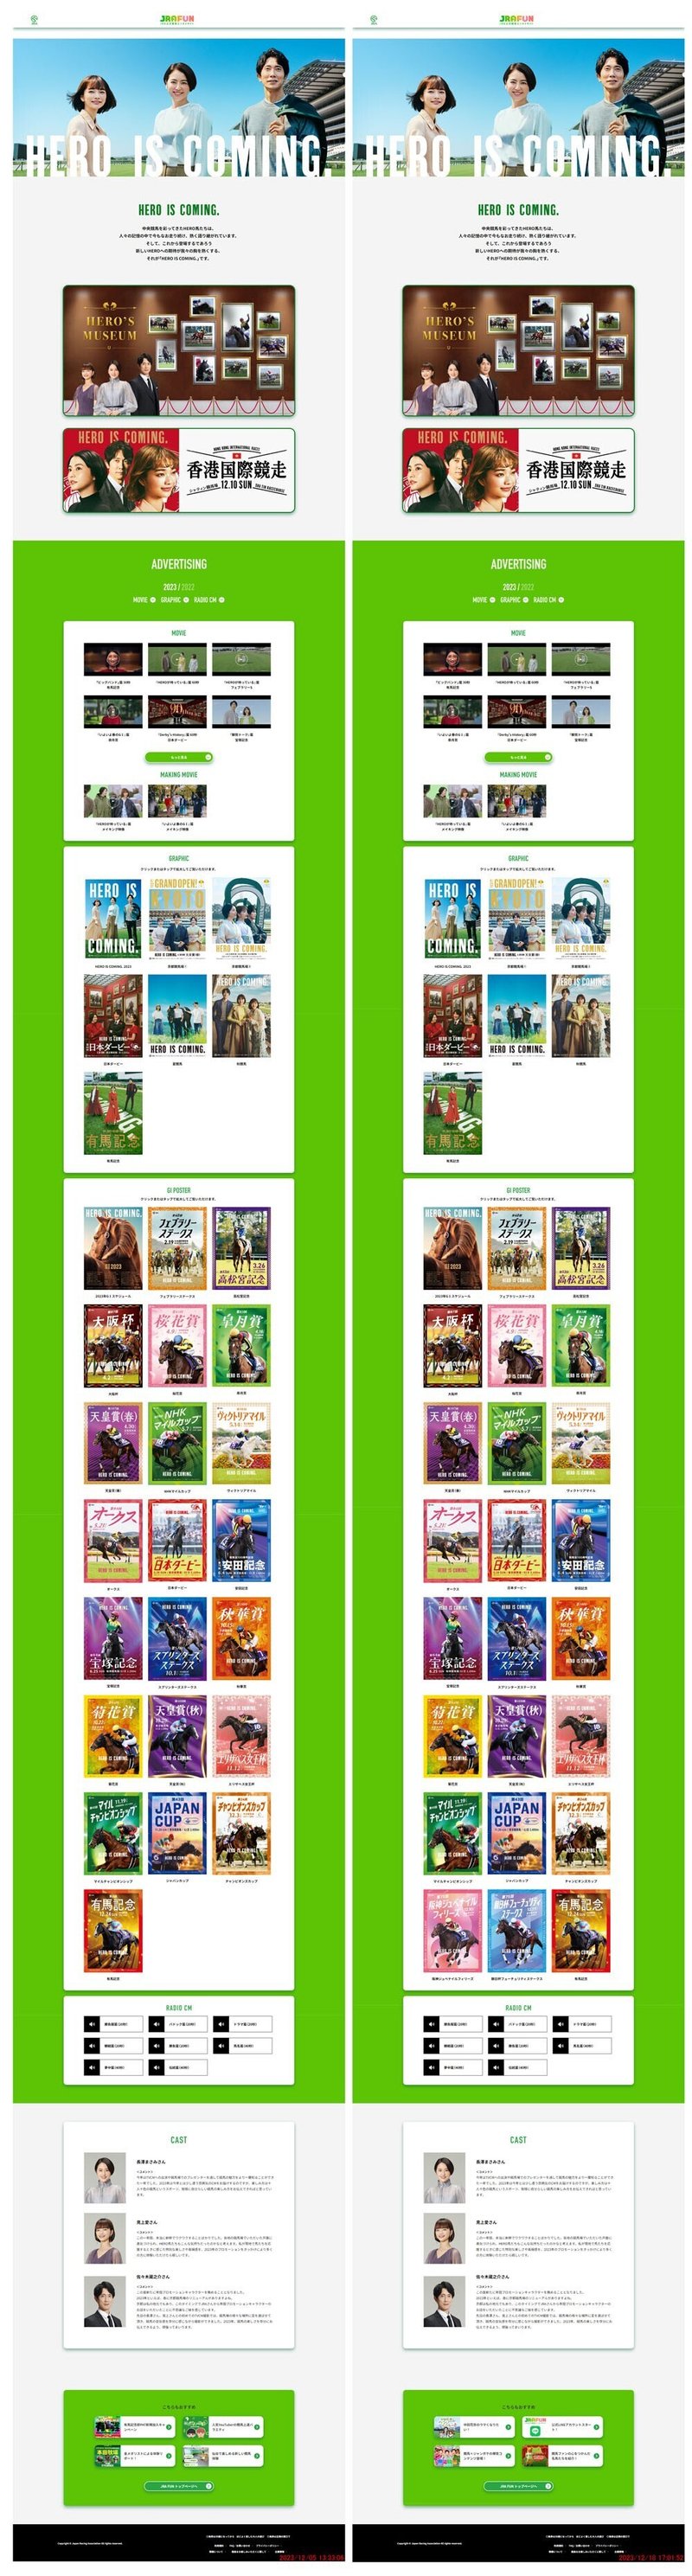 JRA公式ホームページにある「2023年度G1ポスター一覧」の画像×2枚。キャプチャした日付けが異なる2枚を比較してあります。